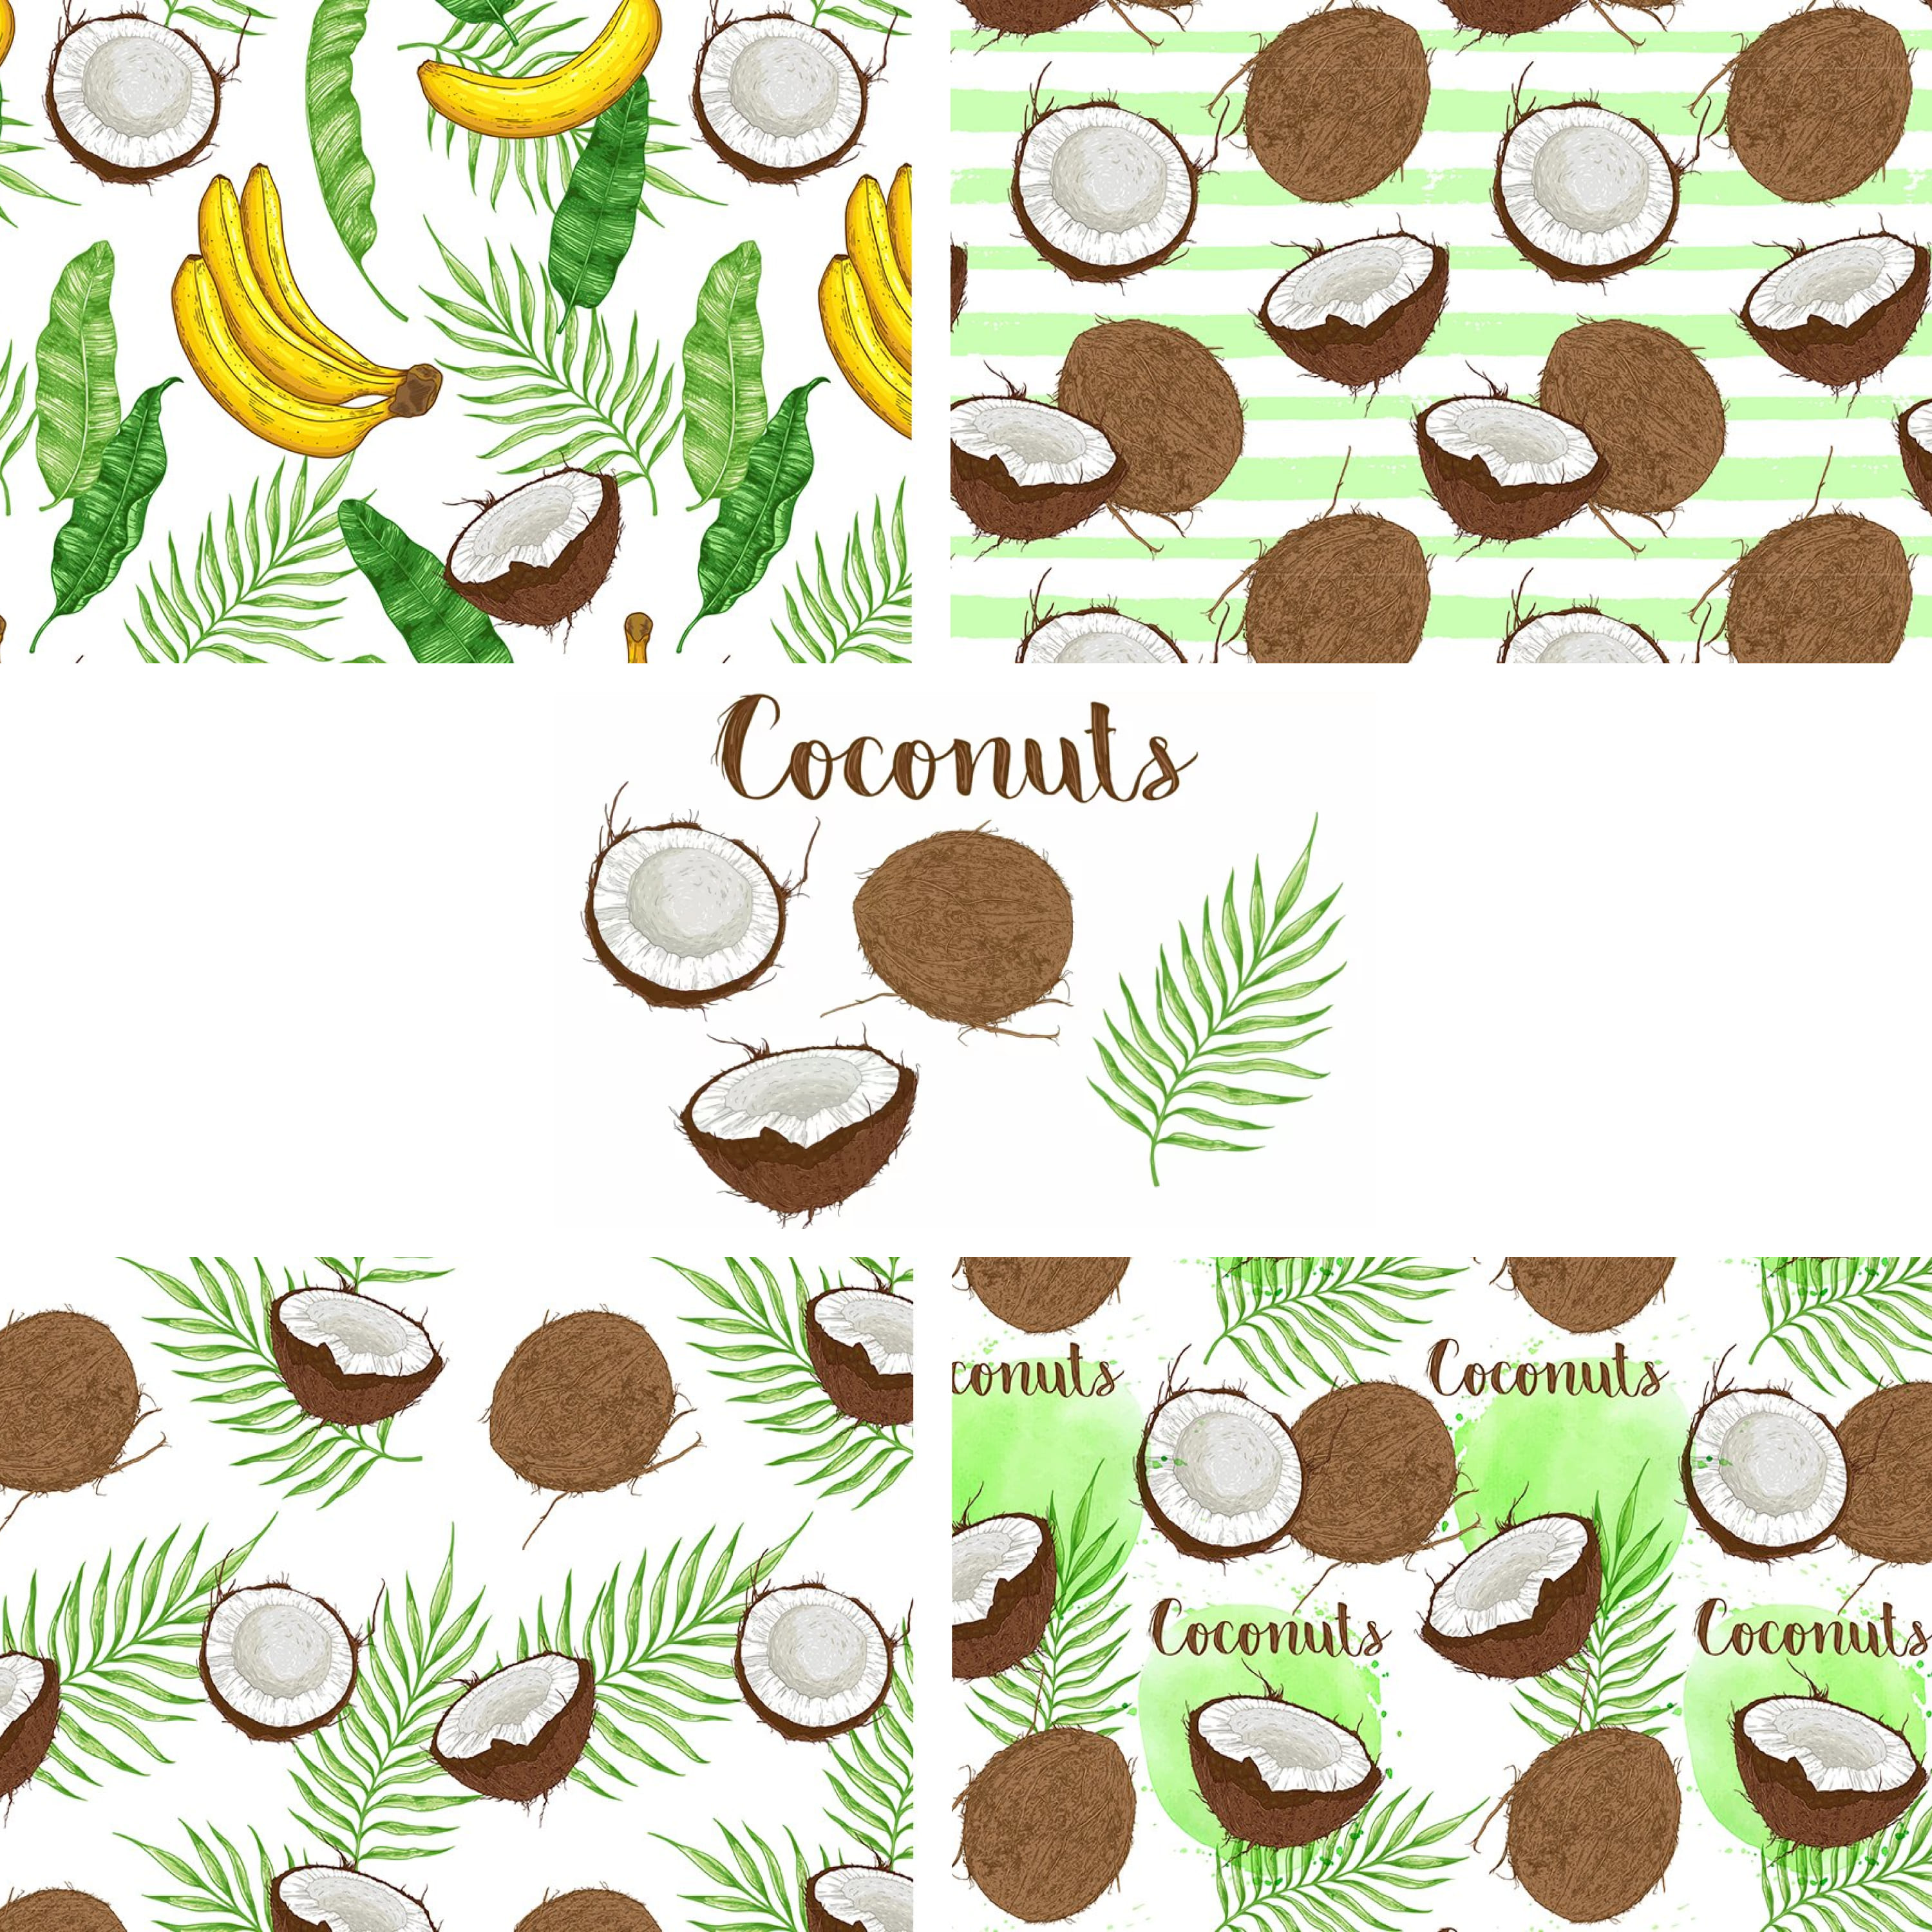 Coconut Design Kit cover.